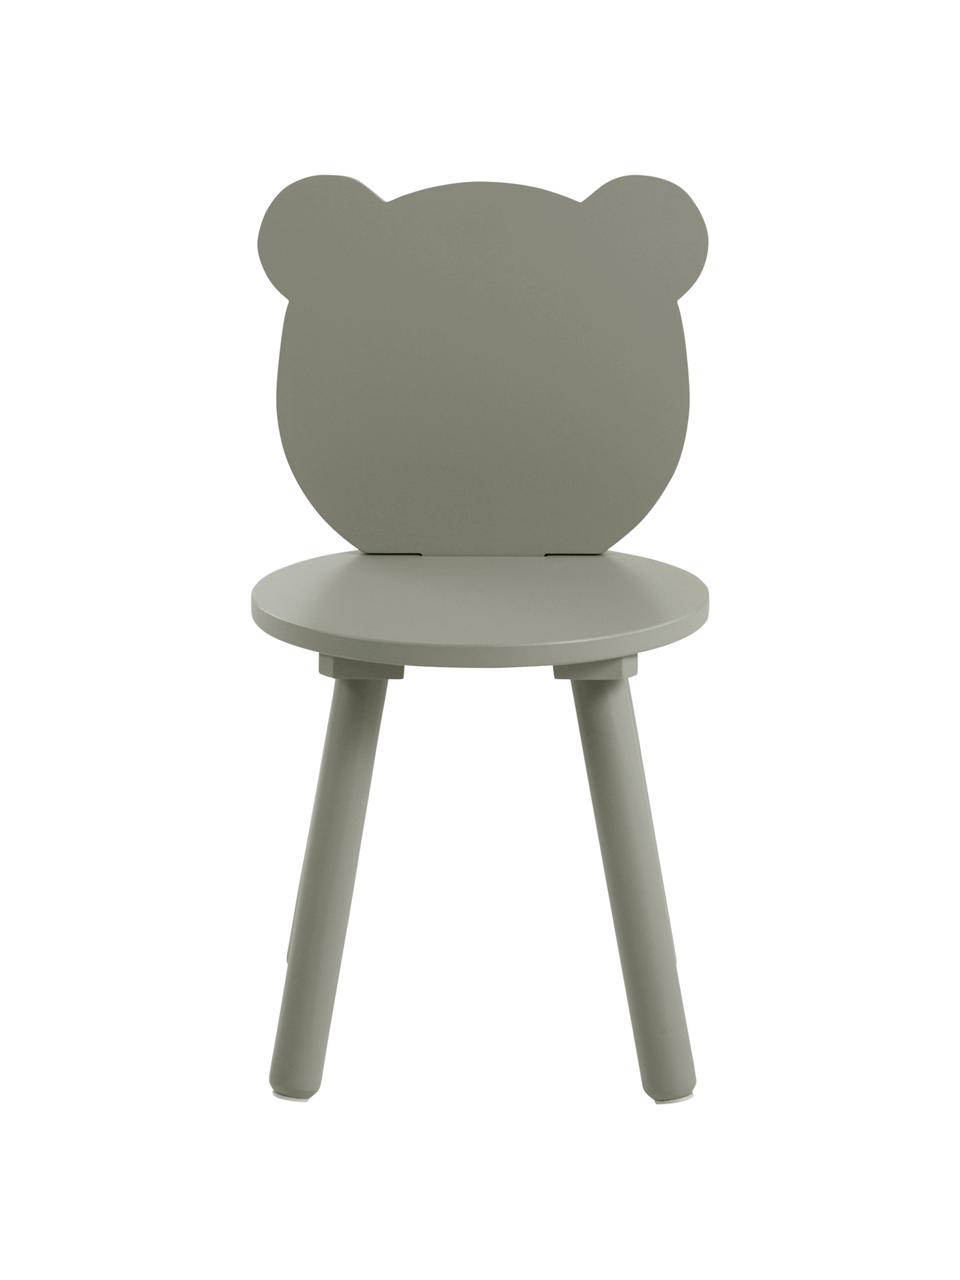 Dřevěné dětské židličky Beary, 2 ks, Borovicové dřevo, lakovaná MDF deska (dřevovláknitá deska střední hustoty), Zelená, Š 30 cm, V 58 cm